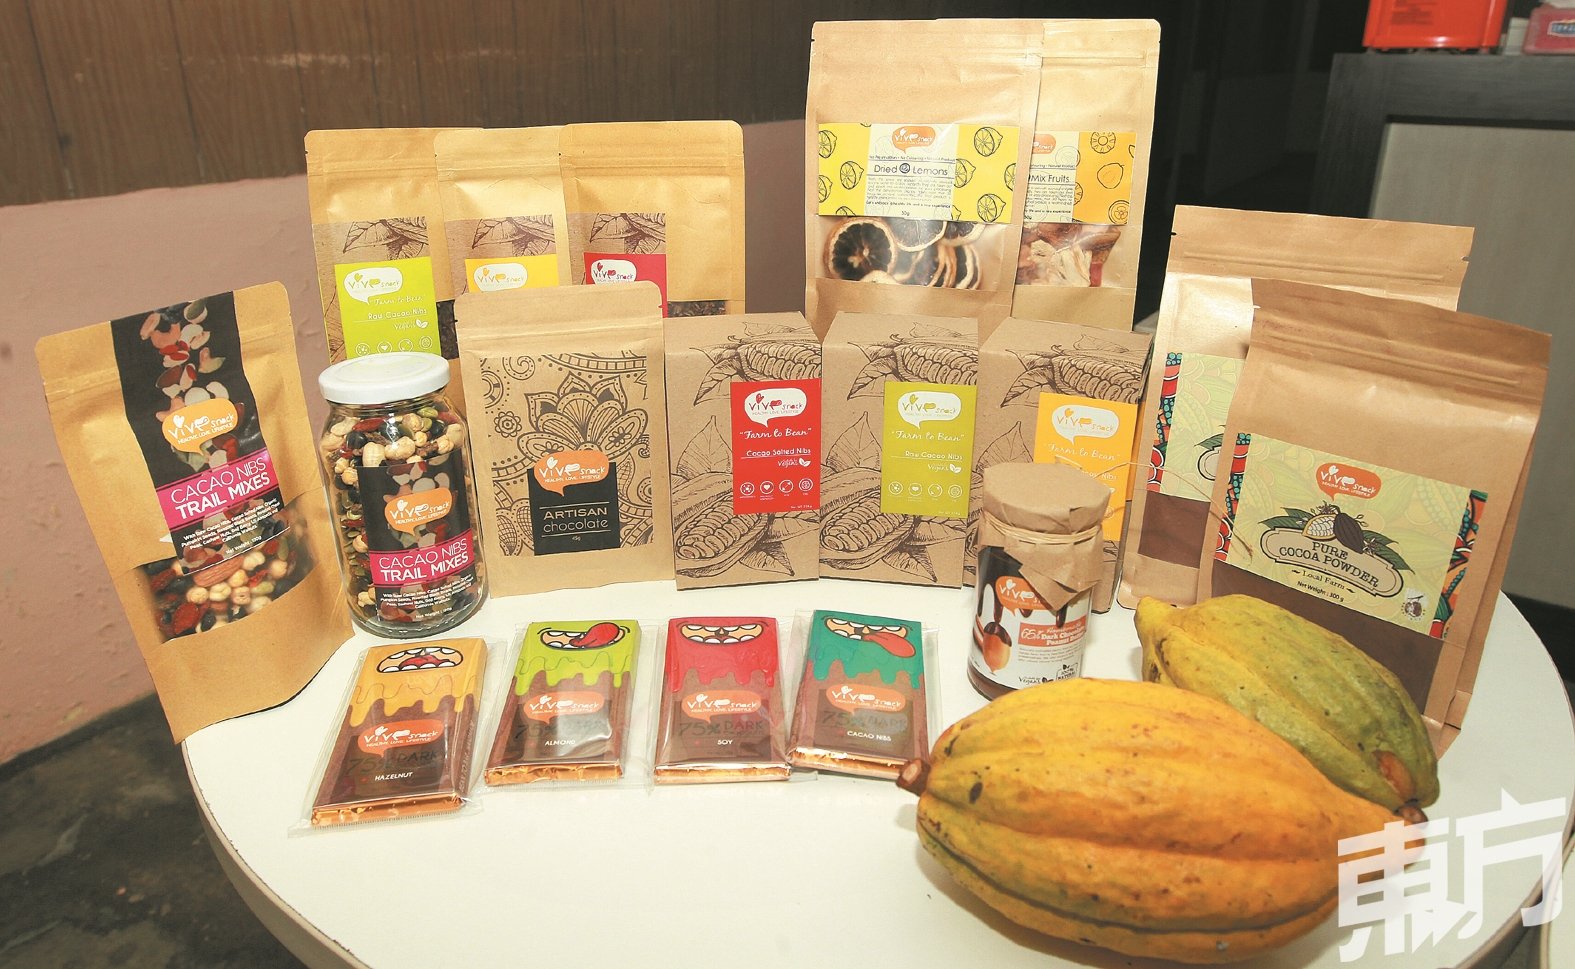 Vive Snack系列产品相当多元，包括有可可豆、巧克力、可可茶、可可粉、可可花生酱以及掺有可可豆的营养杂果，还有一些非可可系列的干果零嘴。